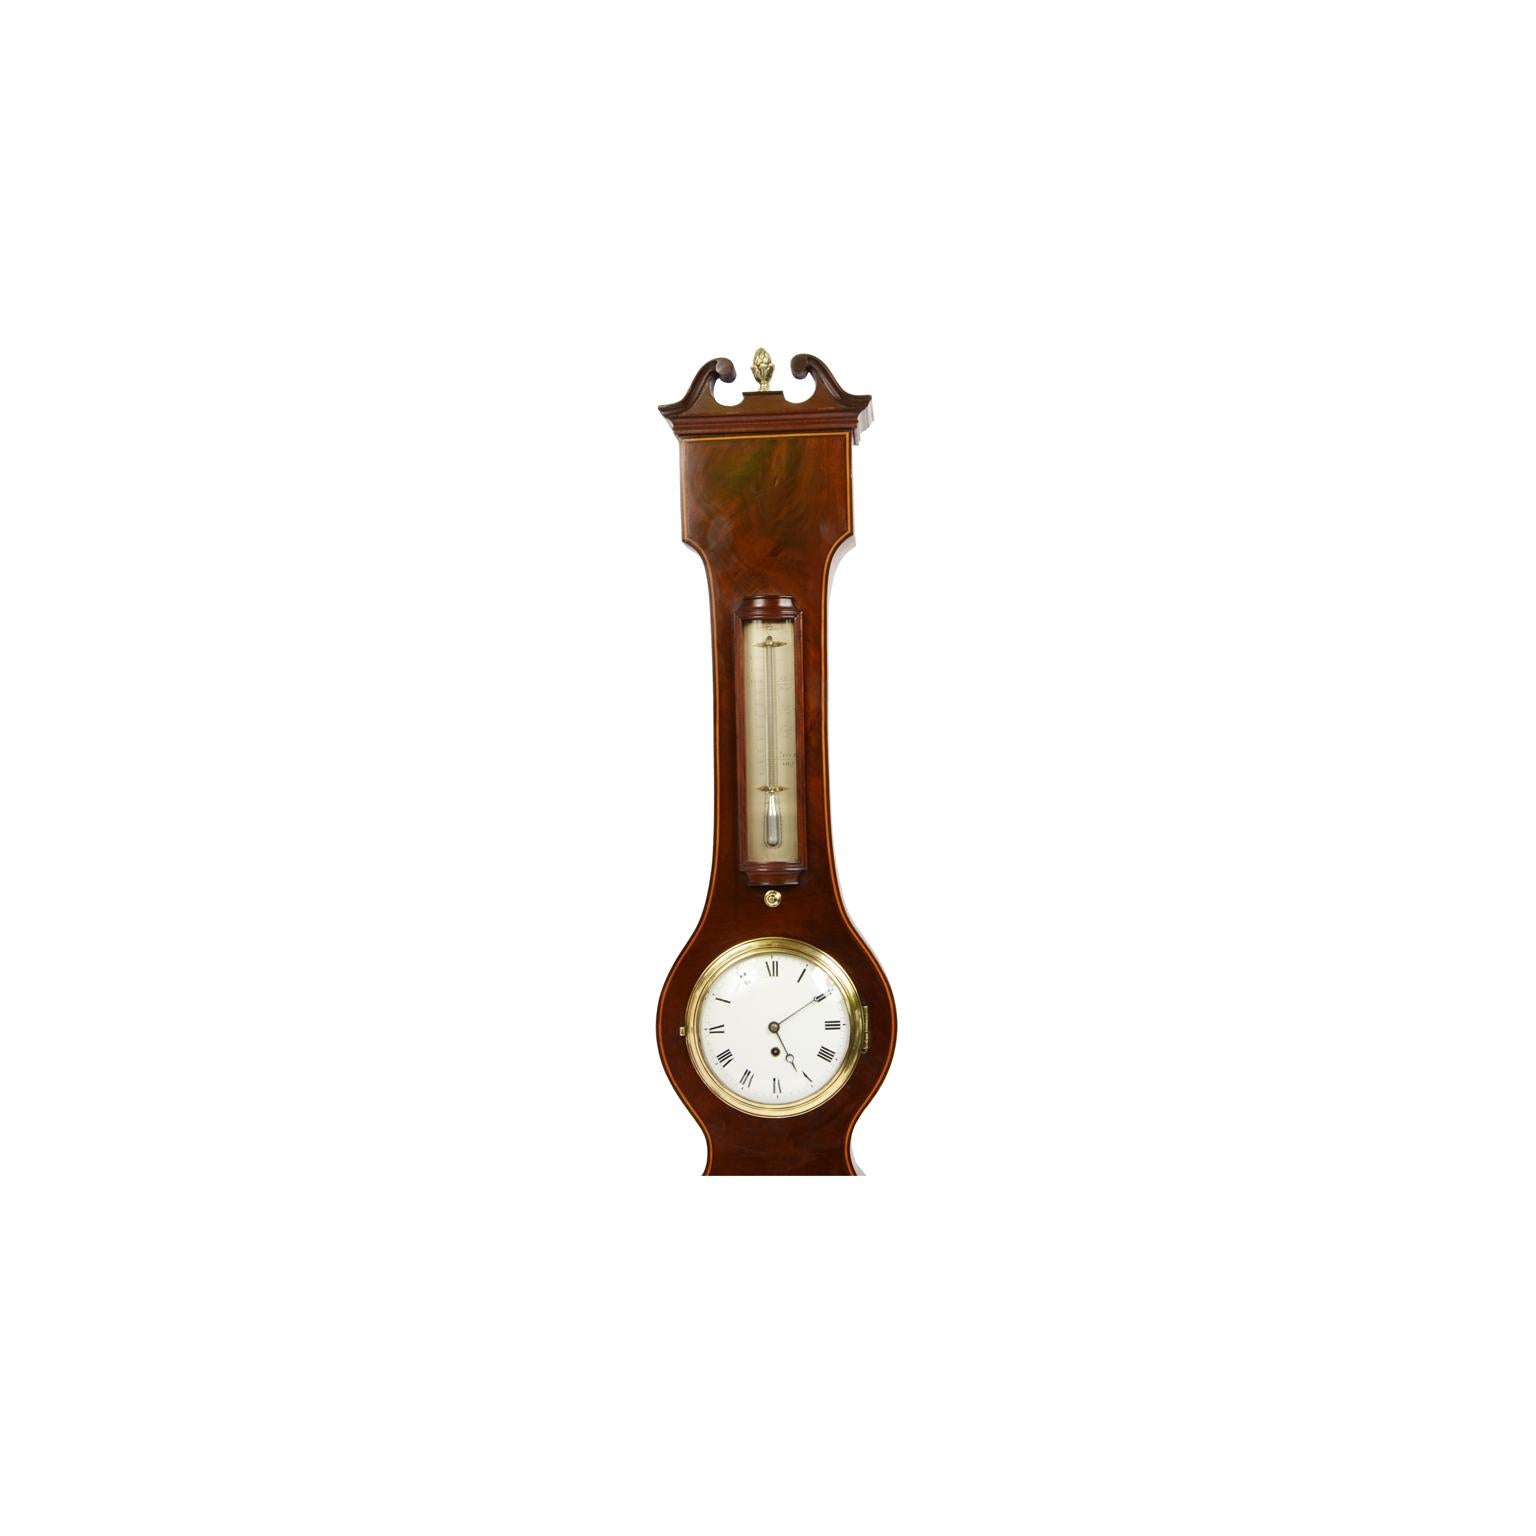 Barometer komplett mit Uhr unterzeichnet F. Somalvico N ° 11 Brook Str. Holborn London datierbar zwischen 1810 und 1820. Fein gearbeitete Mahagoniholzkiste mit Zedernholzkanten. Großes versilbertes Messingzifferblatt mit eingravierten